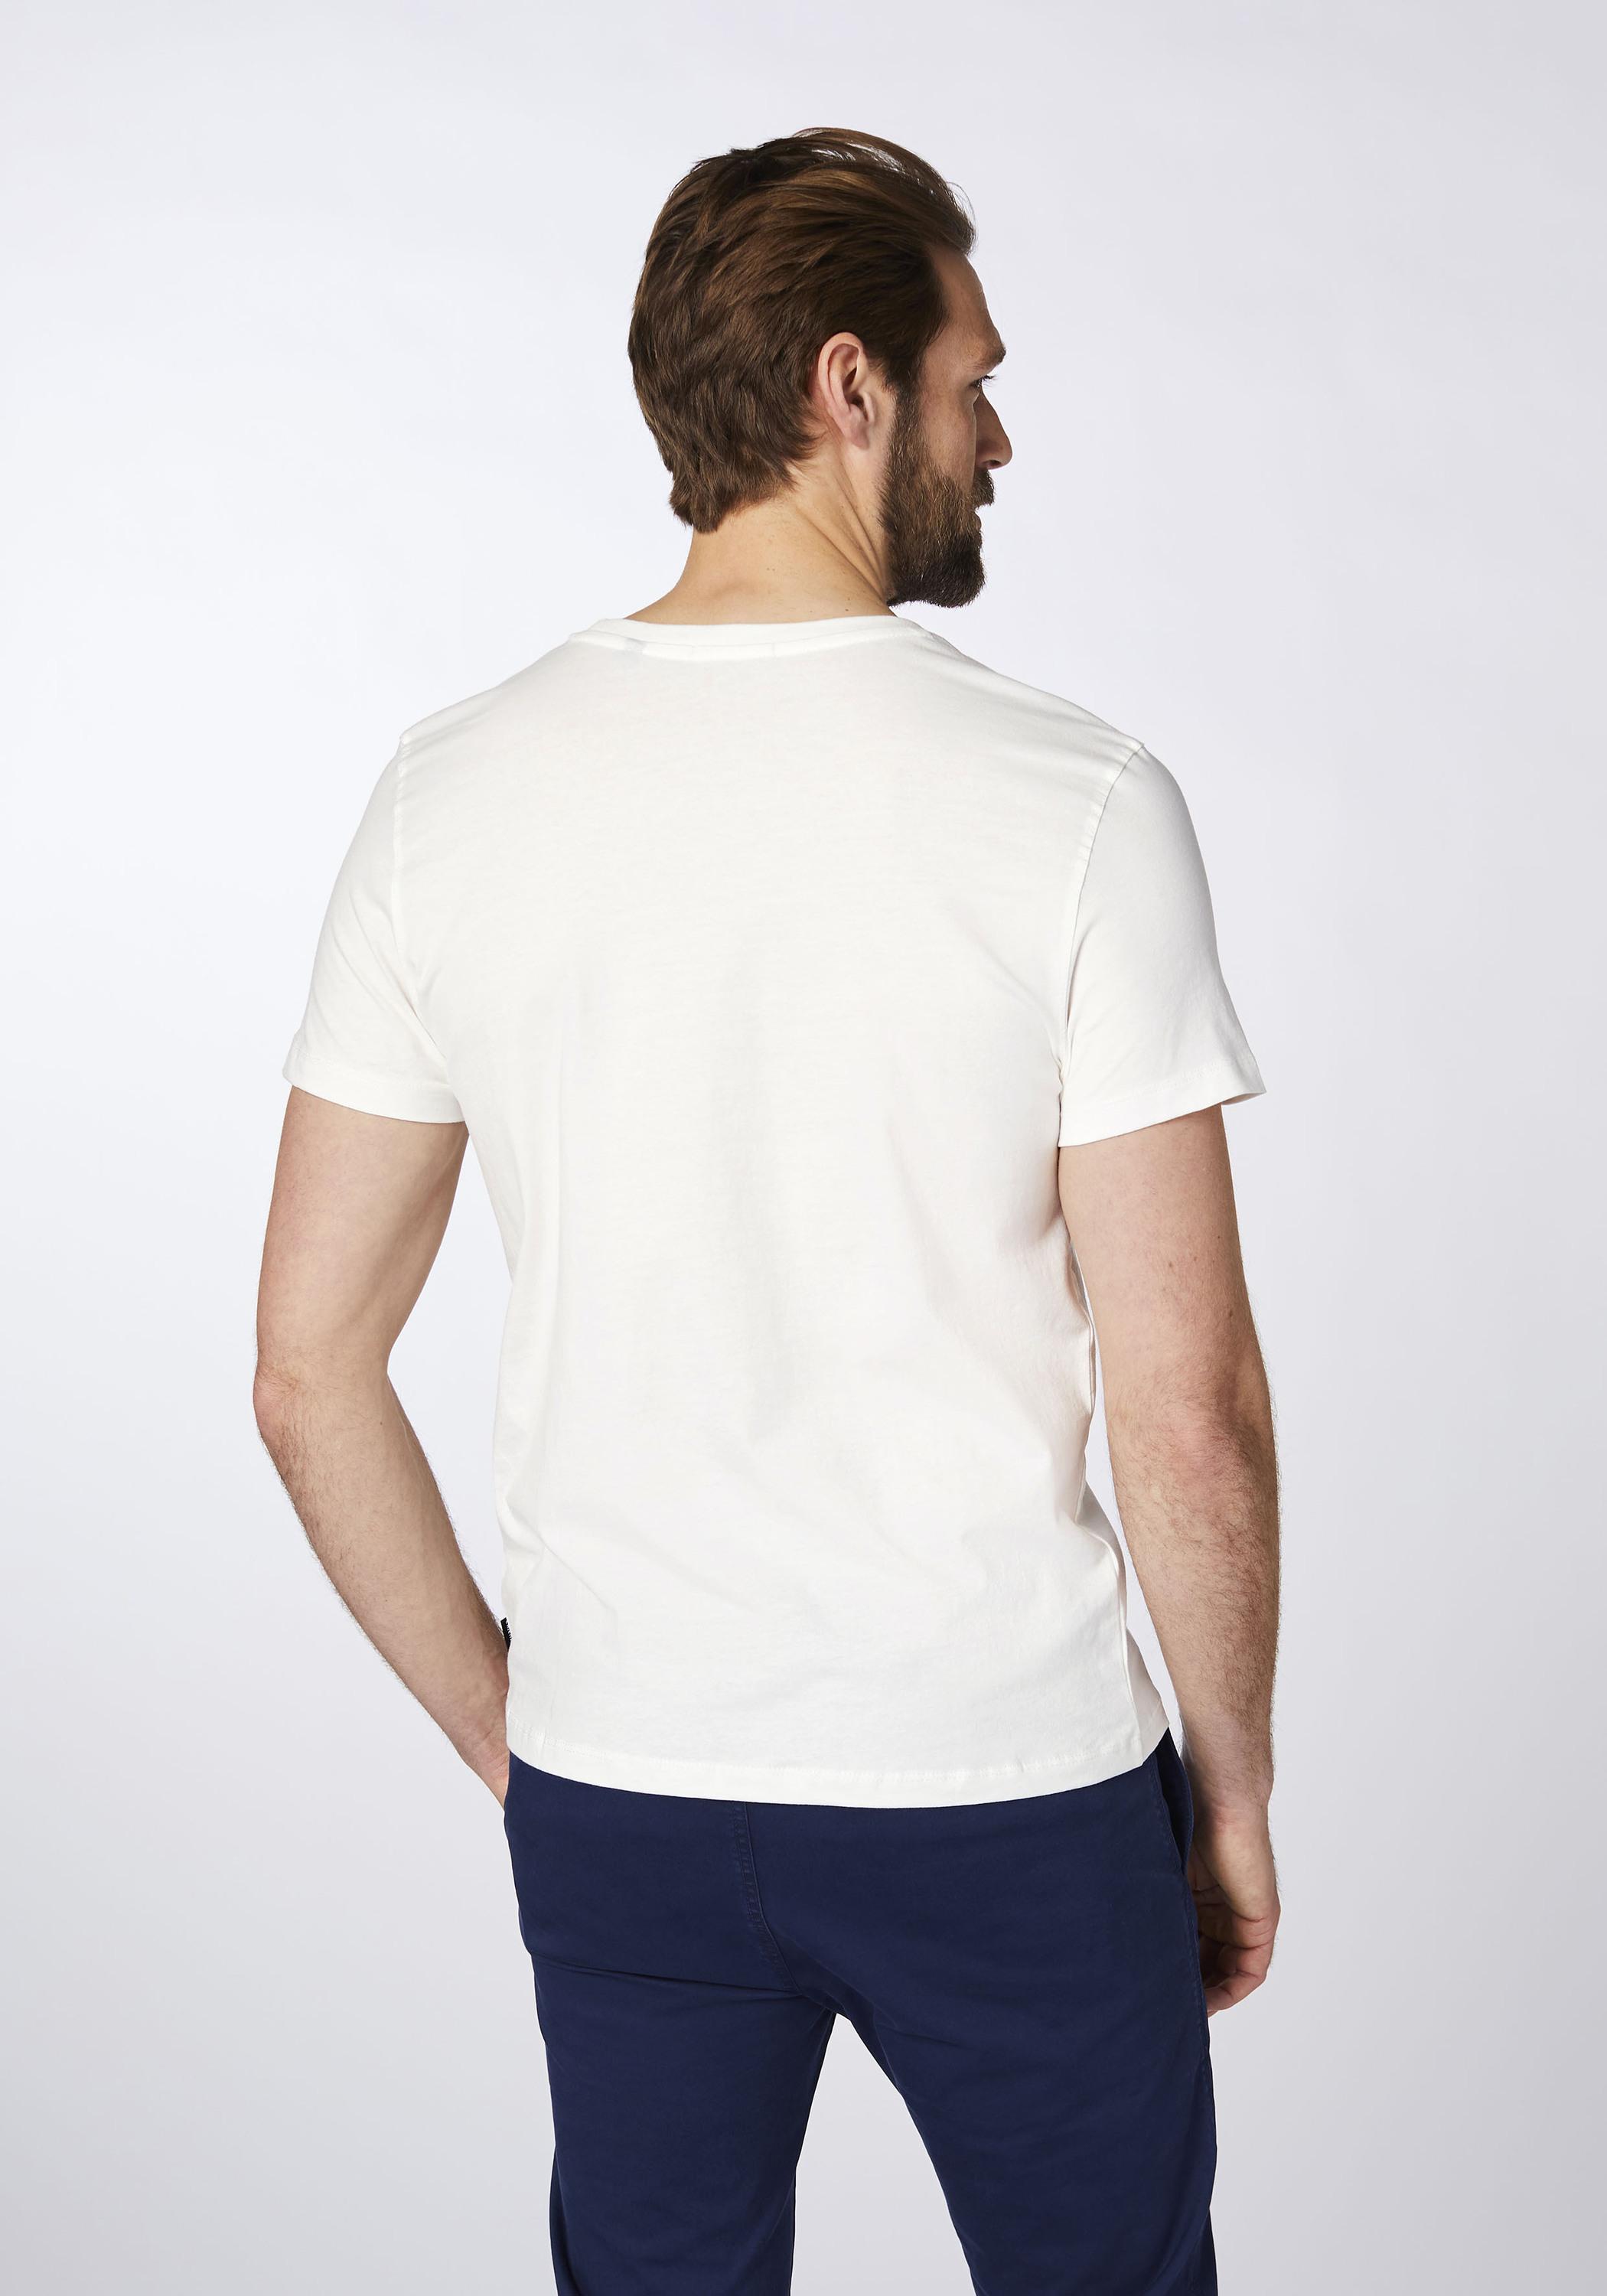 SportScheck Shop kaufen Chiemsee Grn im Wht/Md Online von Herren T-Shirt Dif T-Shirt